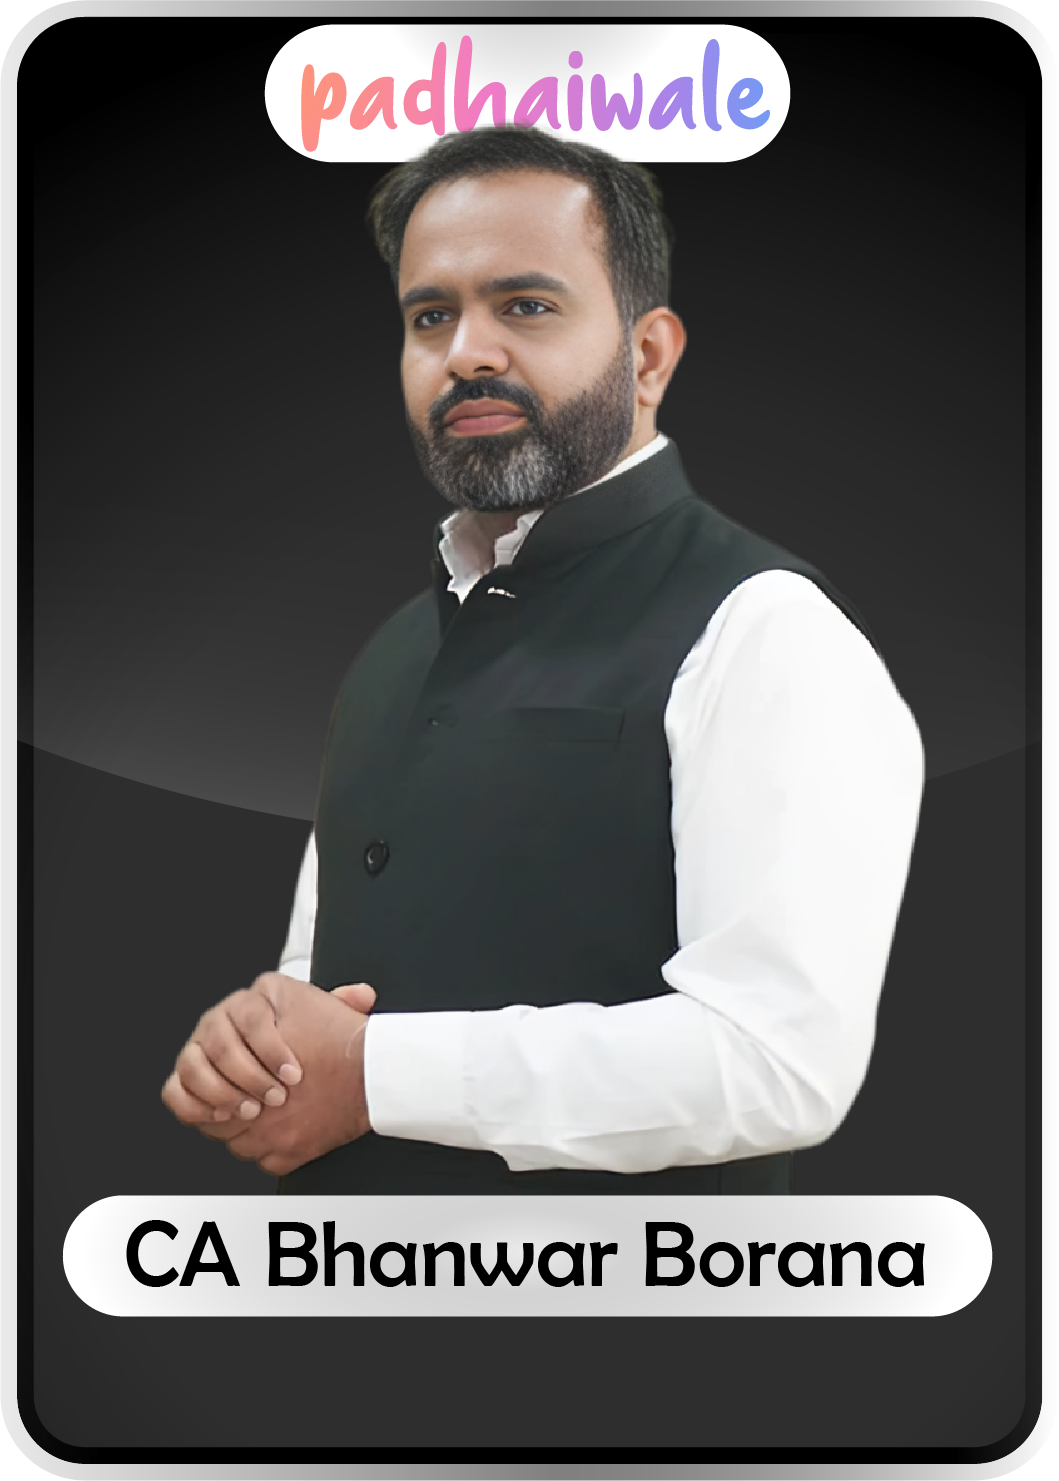 CA Bhanwar Borana